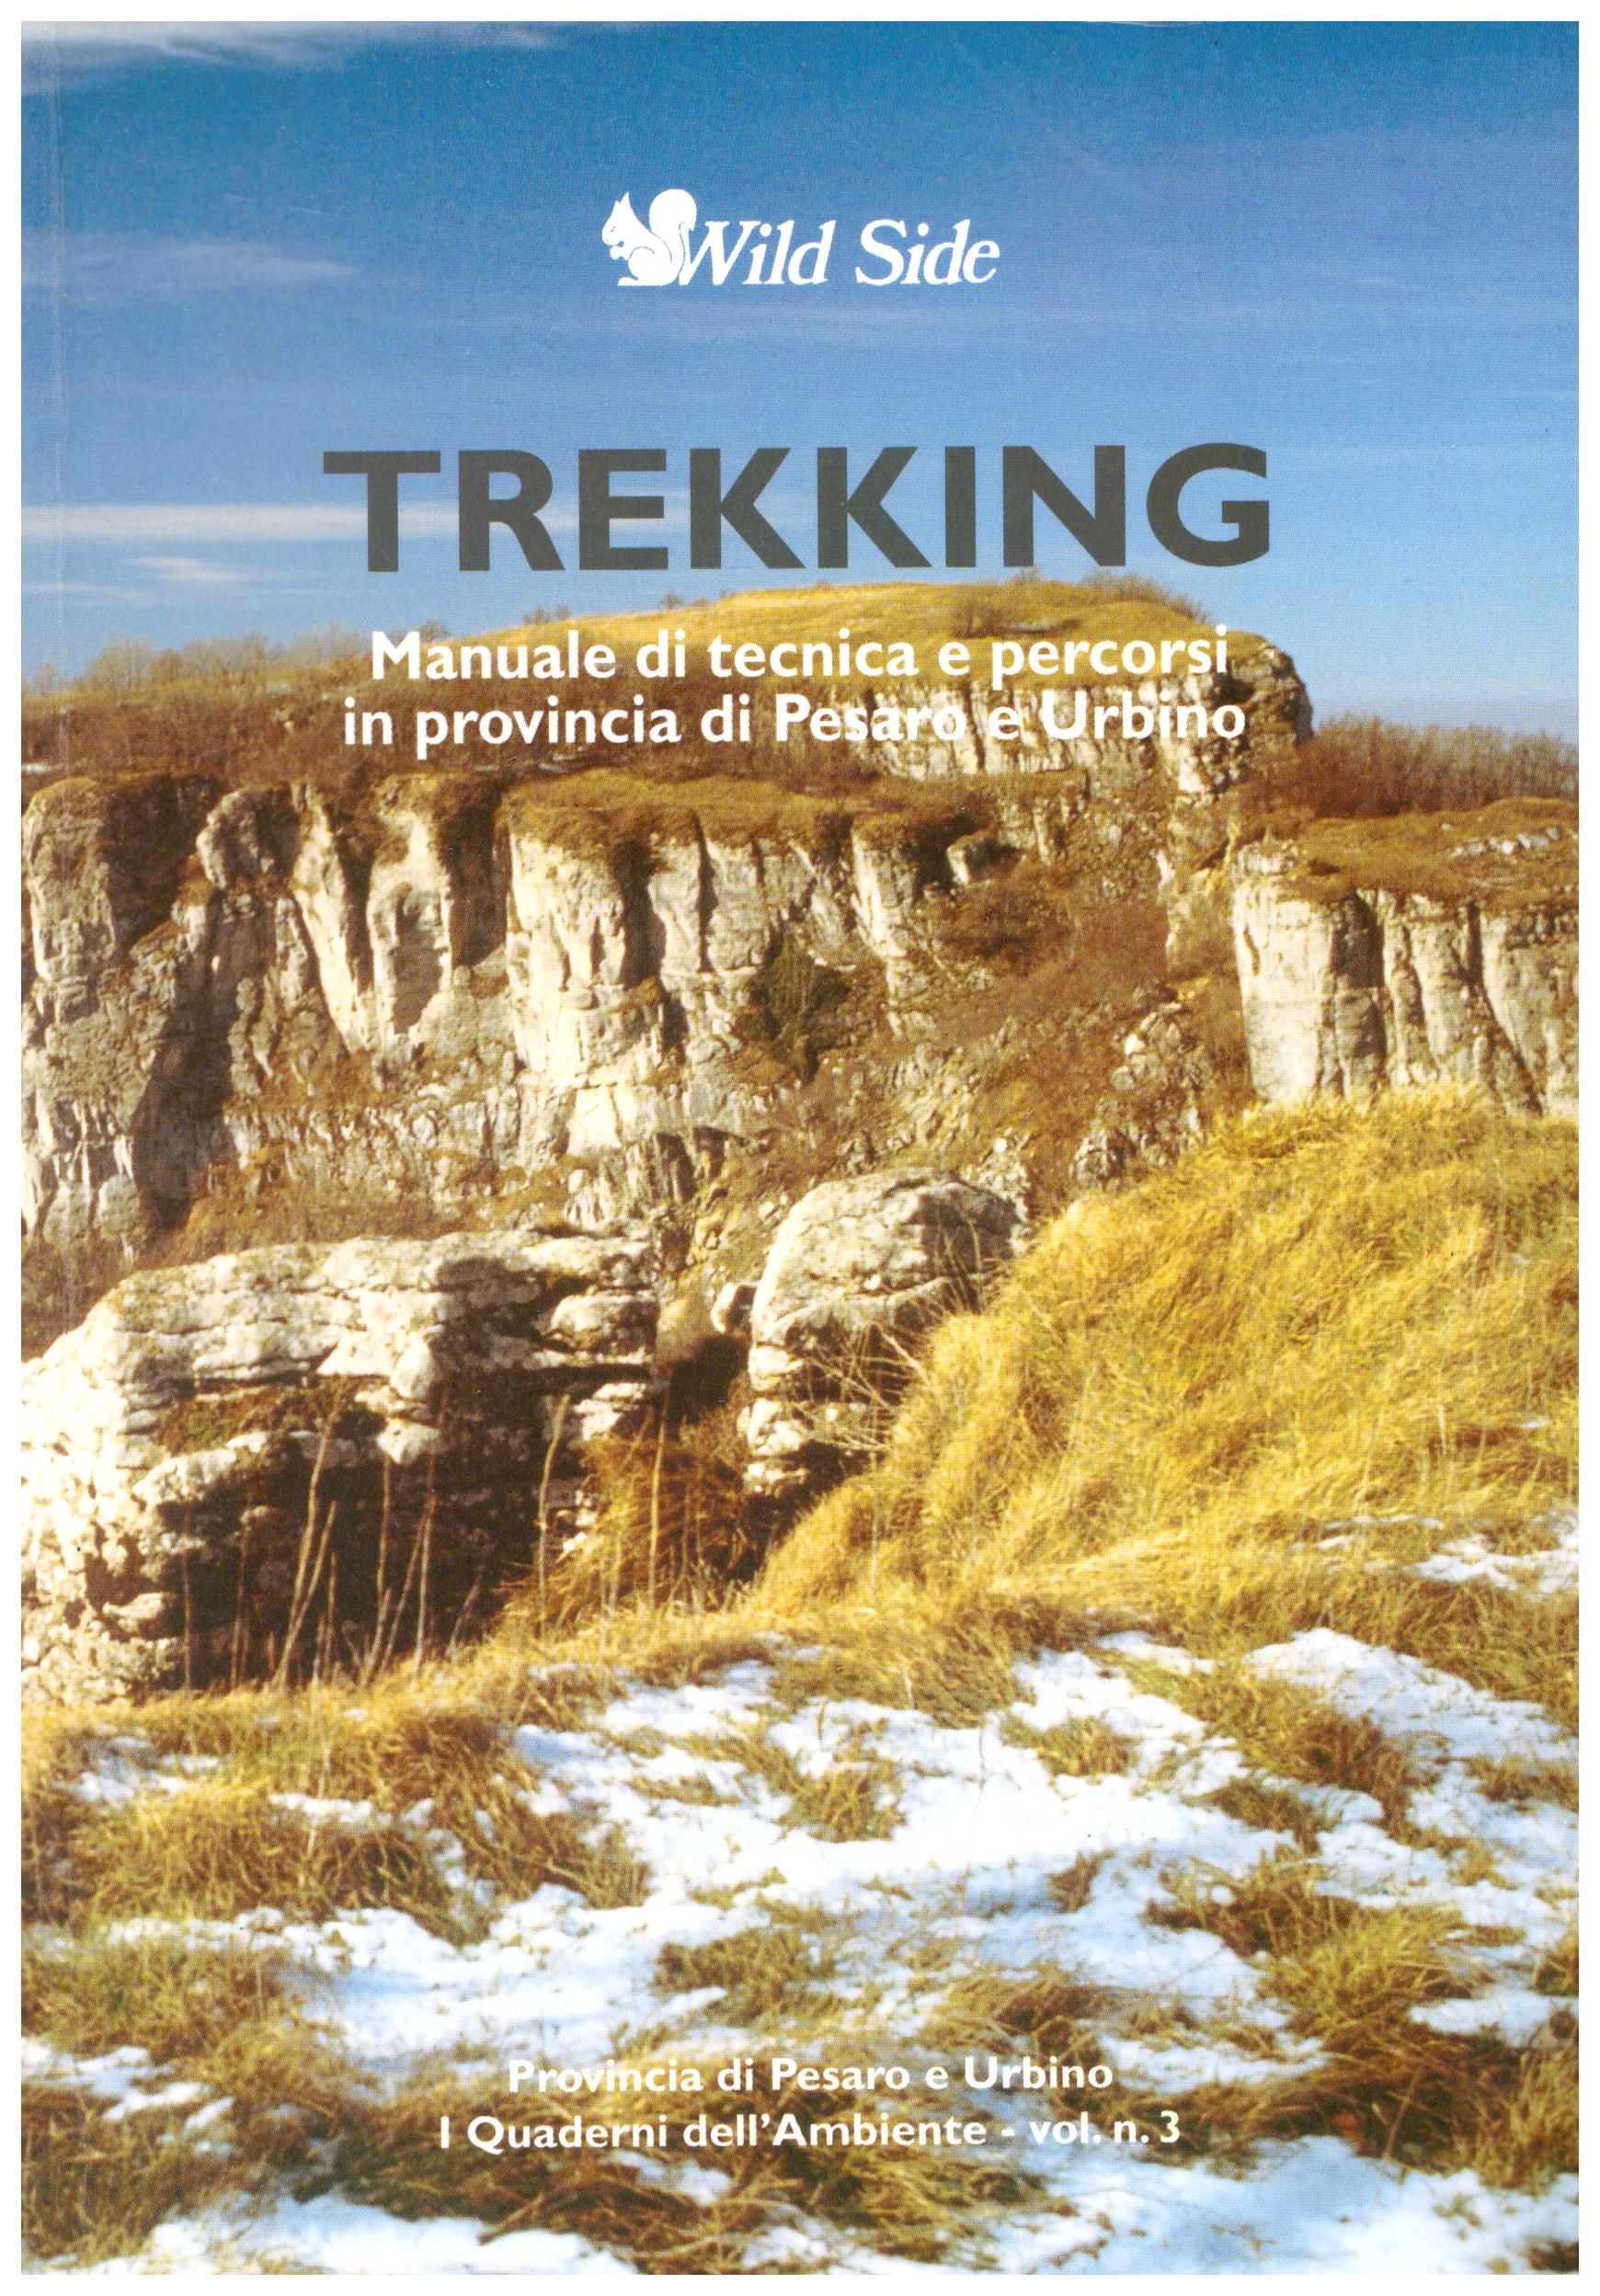 Trekking. Manuale di tecnica e percorsi in provincia di Pesaro e Urbino. Collana: I quaderni dell'ambiente - vol. n. 3